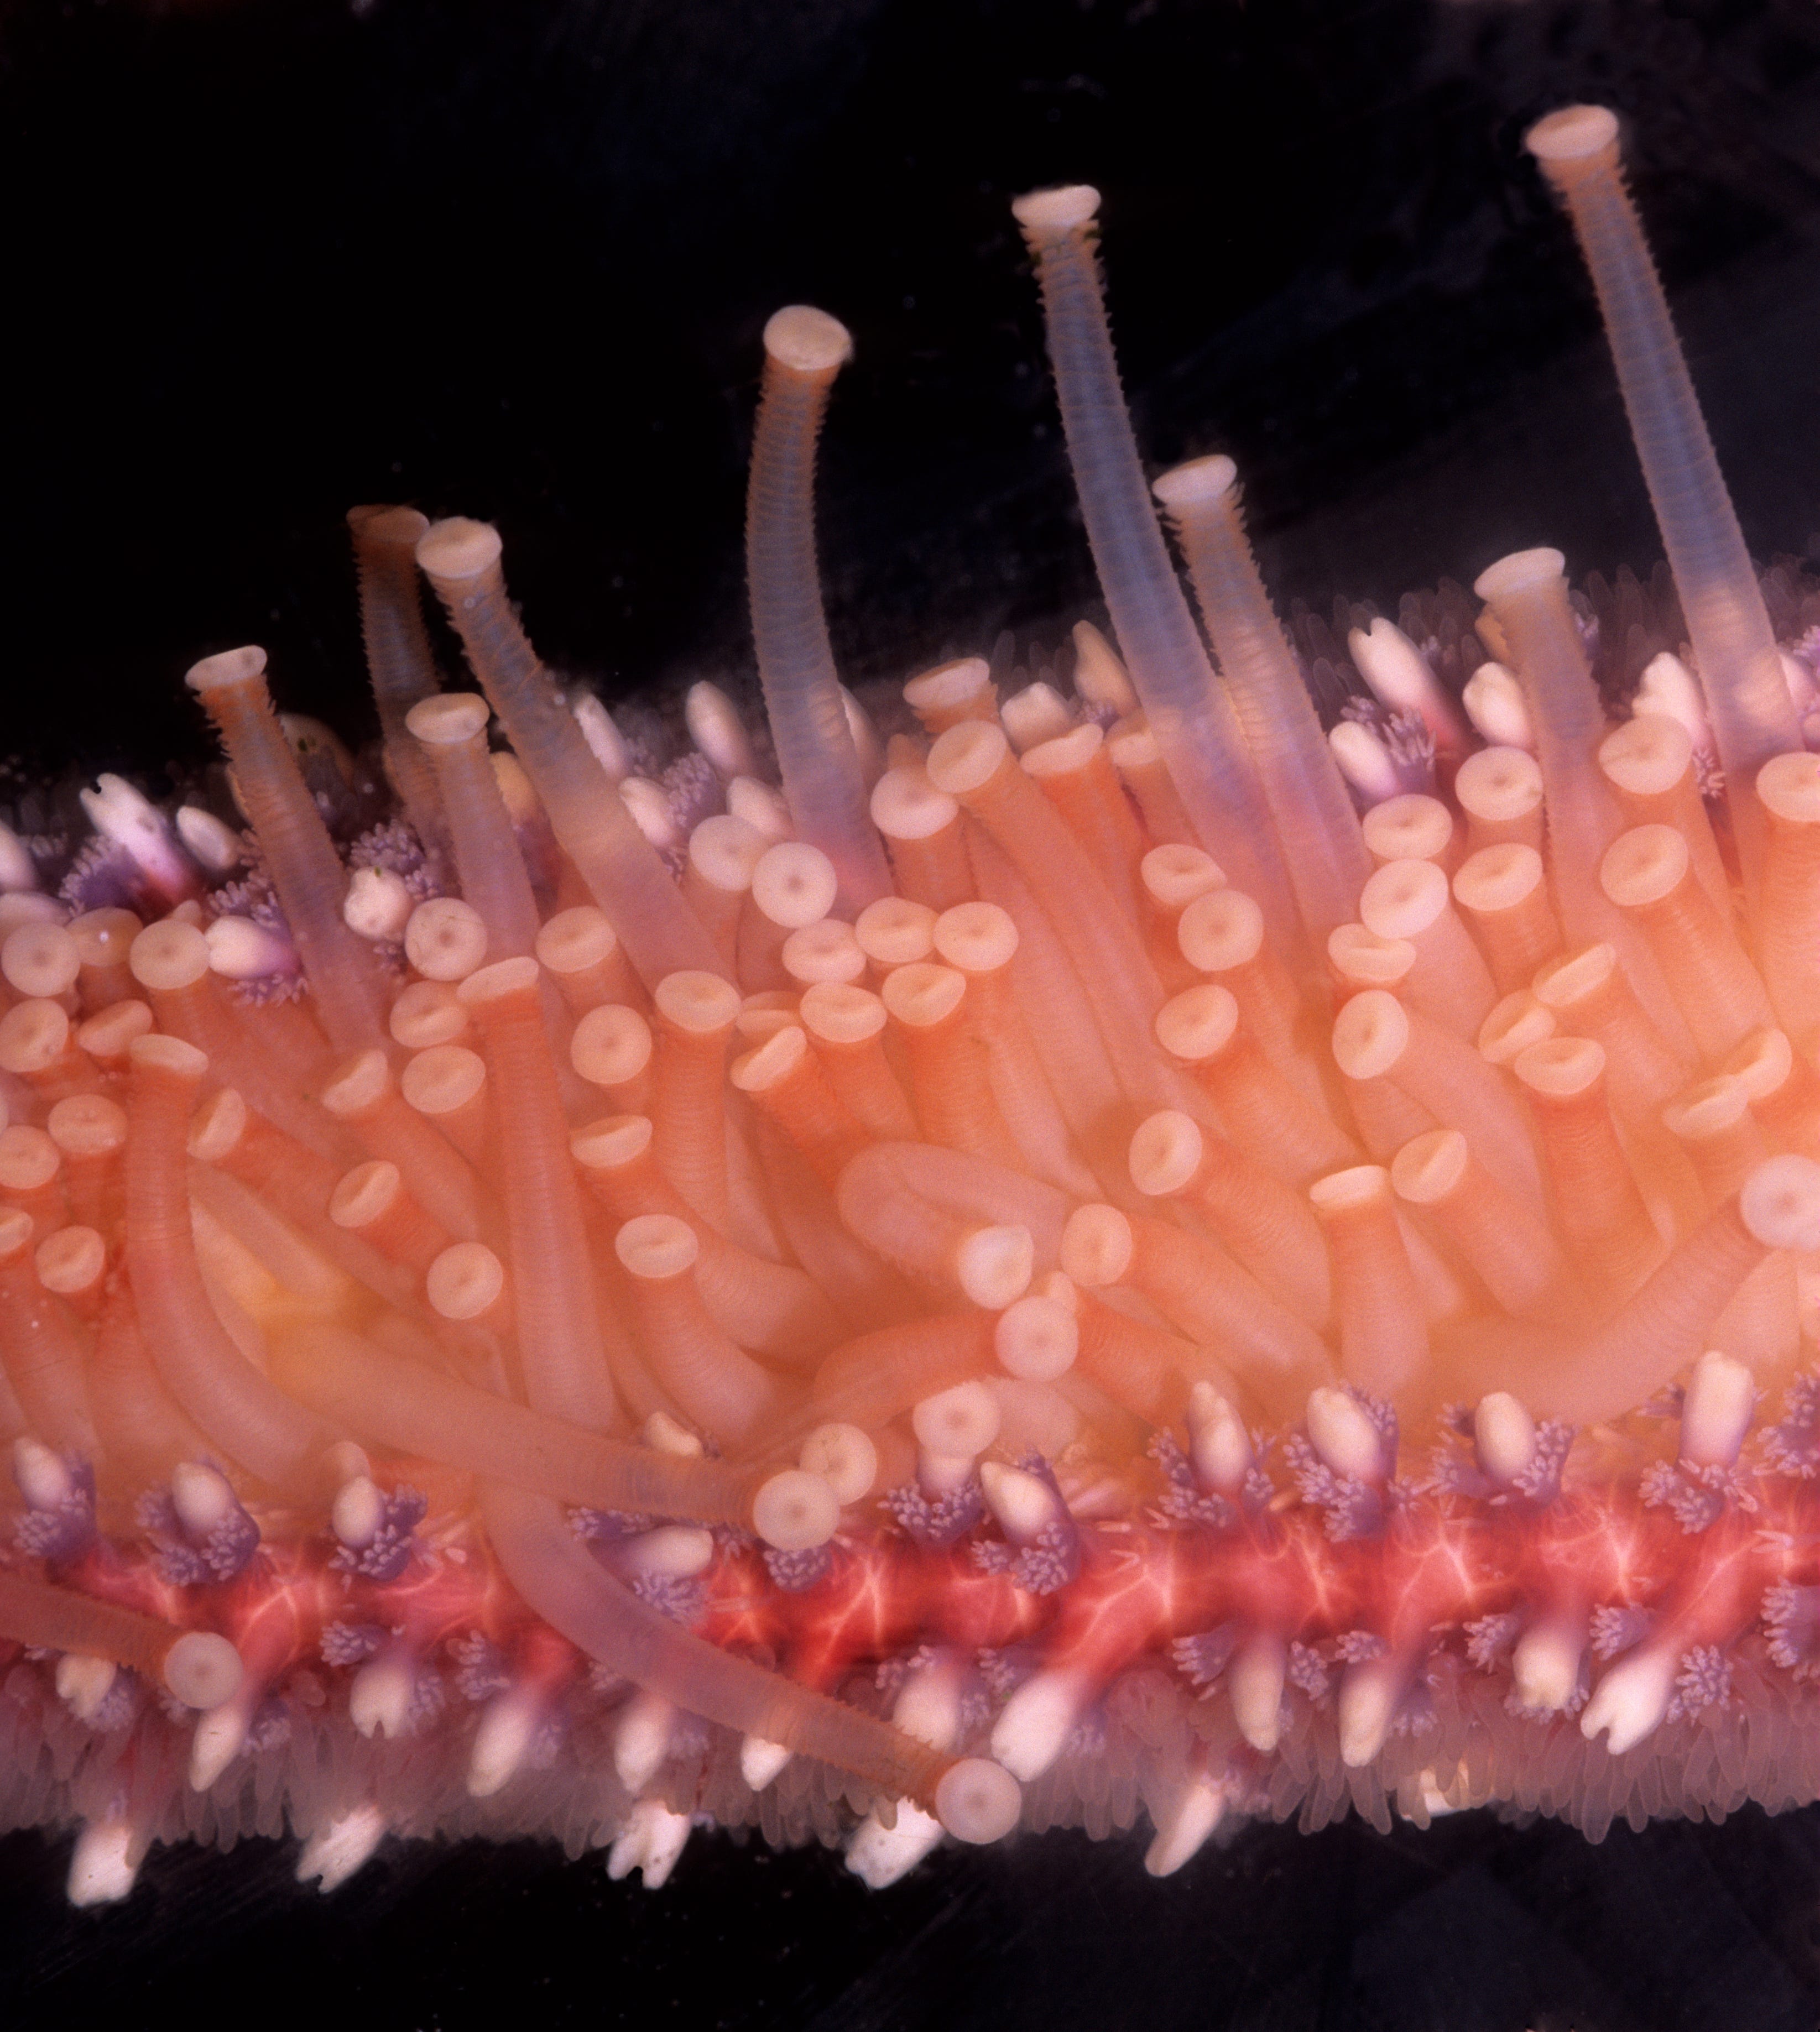 TUBE FEET verwendet in einer SEA STARS (Star Fish) FORTBEWEGUNG und PREDATION.  Dieses Bild zeigt: RÖHRENFÜSSE, PEDICELLARIAE (Zangen), SPINES und DERMAL GILLS auf der Unterseite eines Sea Star-Arms.  Sonnenblumen-Seestern (Pycnopodia helianthoides).  Dieser Seestern ist ein schnelles, gefräßiges Raubtier, das Muscheln (Muscheln und Miesmuscheln) und andere Meeresorganismen jagen kann.  Seesterne sind Stachelhäuter (stachelhäutige Tiere), die ein Wassergefäßsystem haben.  Oregon-Küste